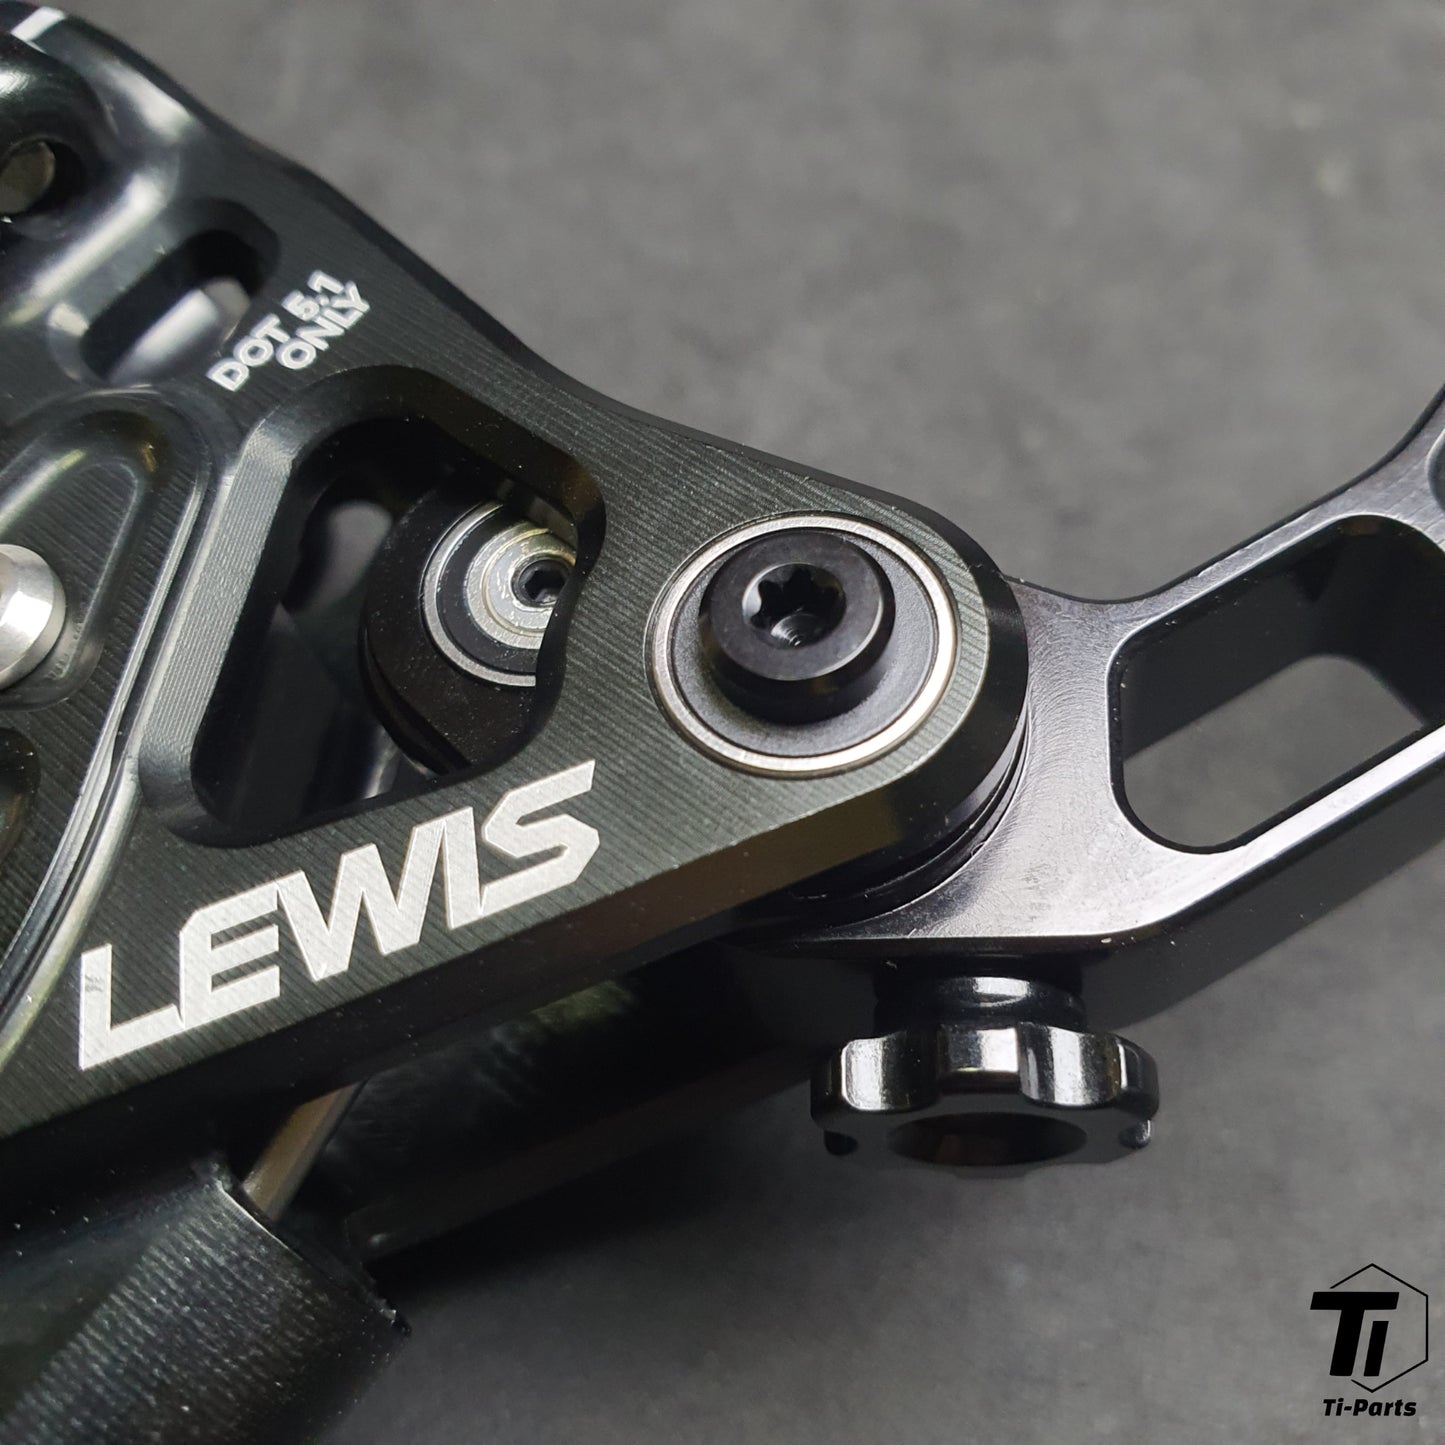 Kit de freio Lewis EP8 + 8 pistões para bicicleta elétrica | Kit de atualização do freio traseiro | Frete grátis mundial